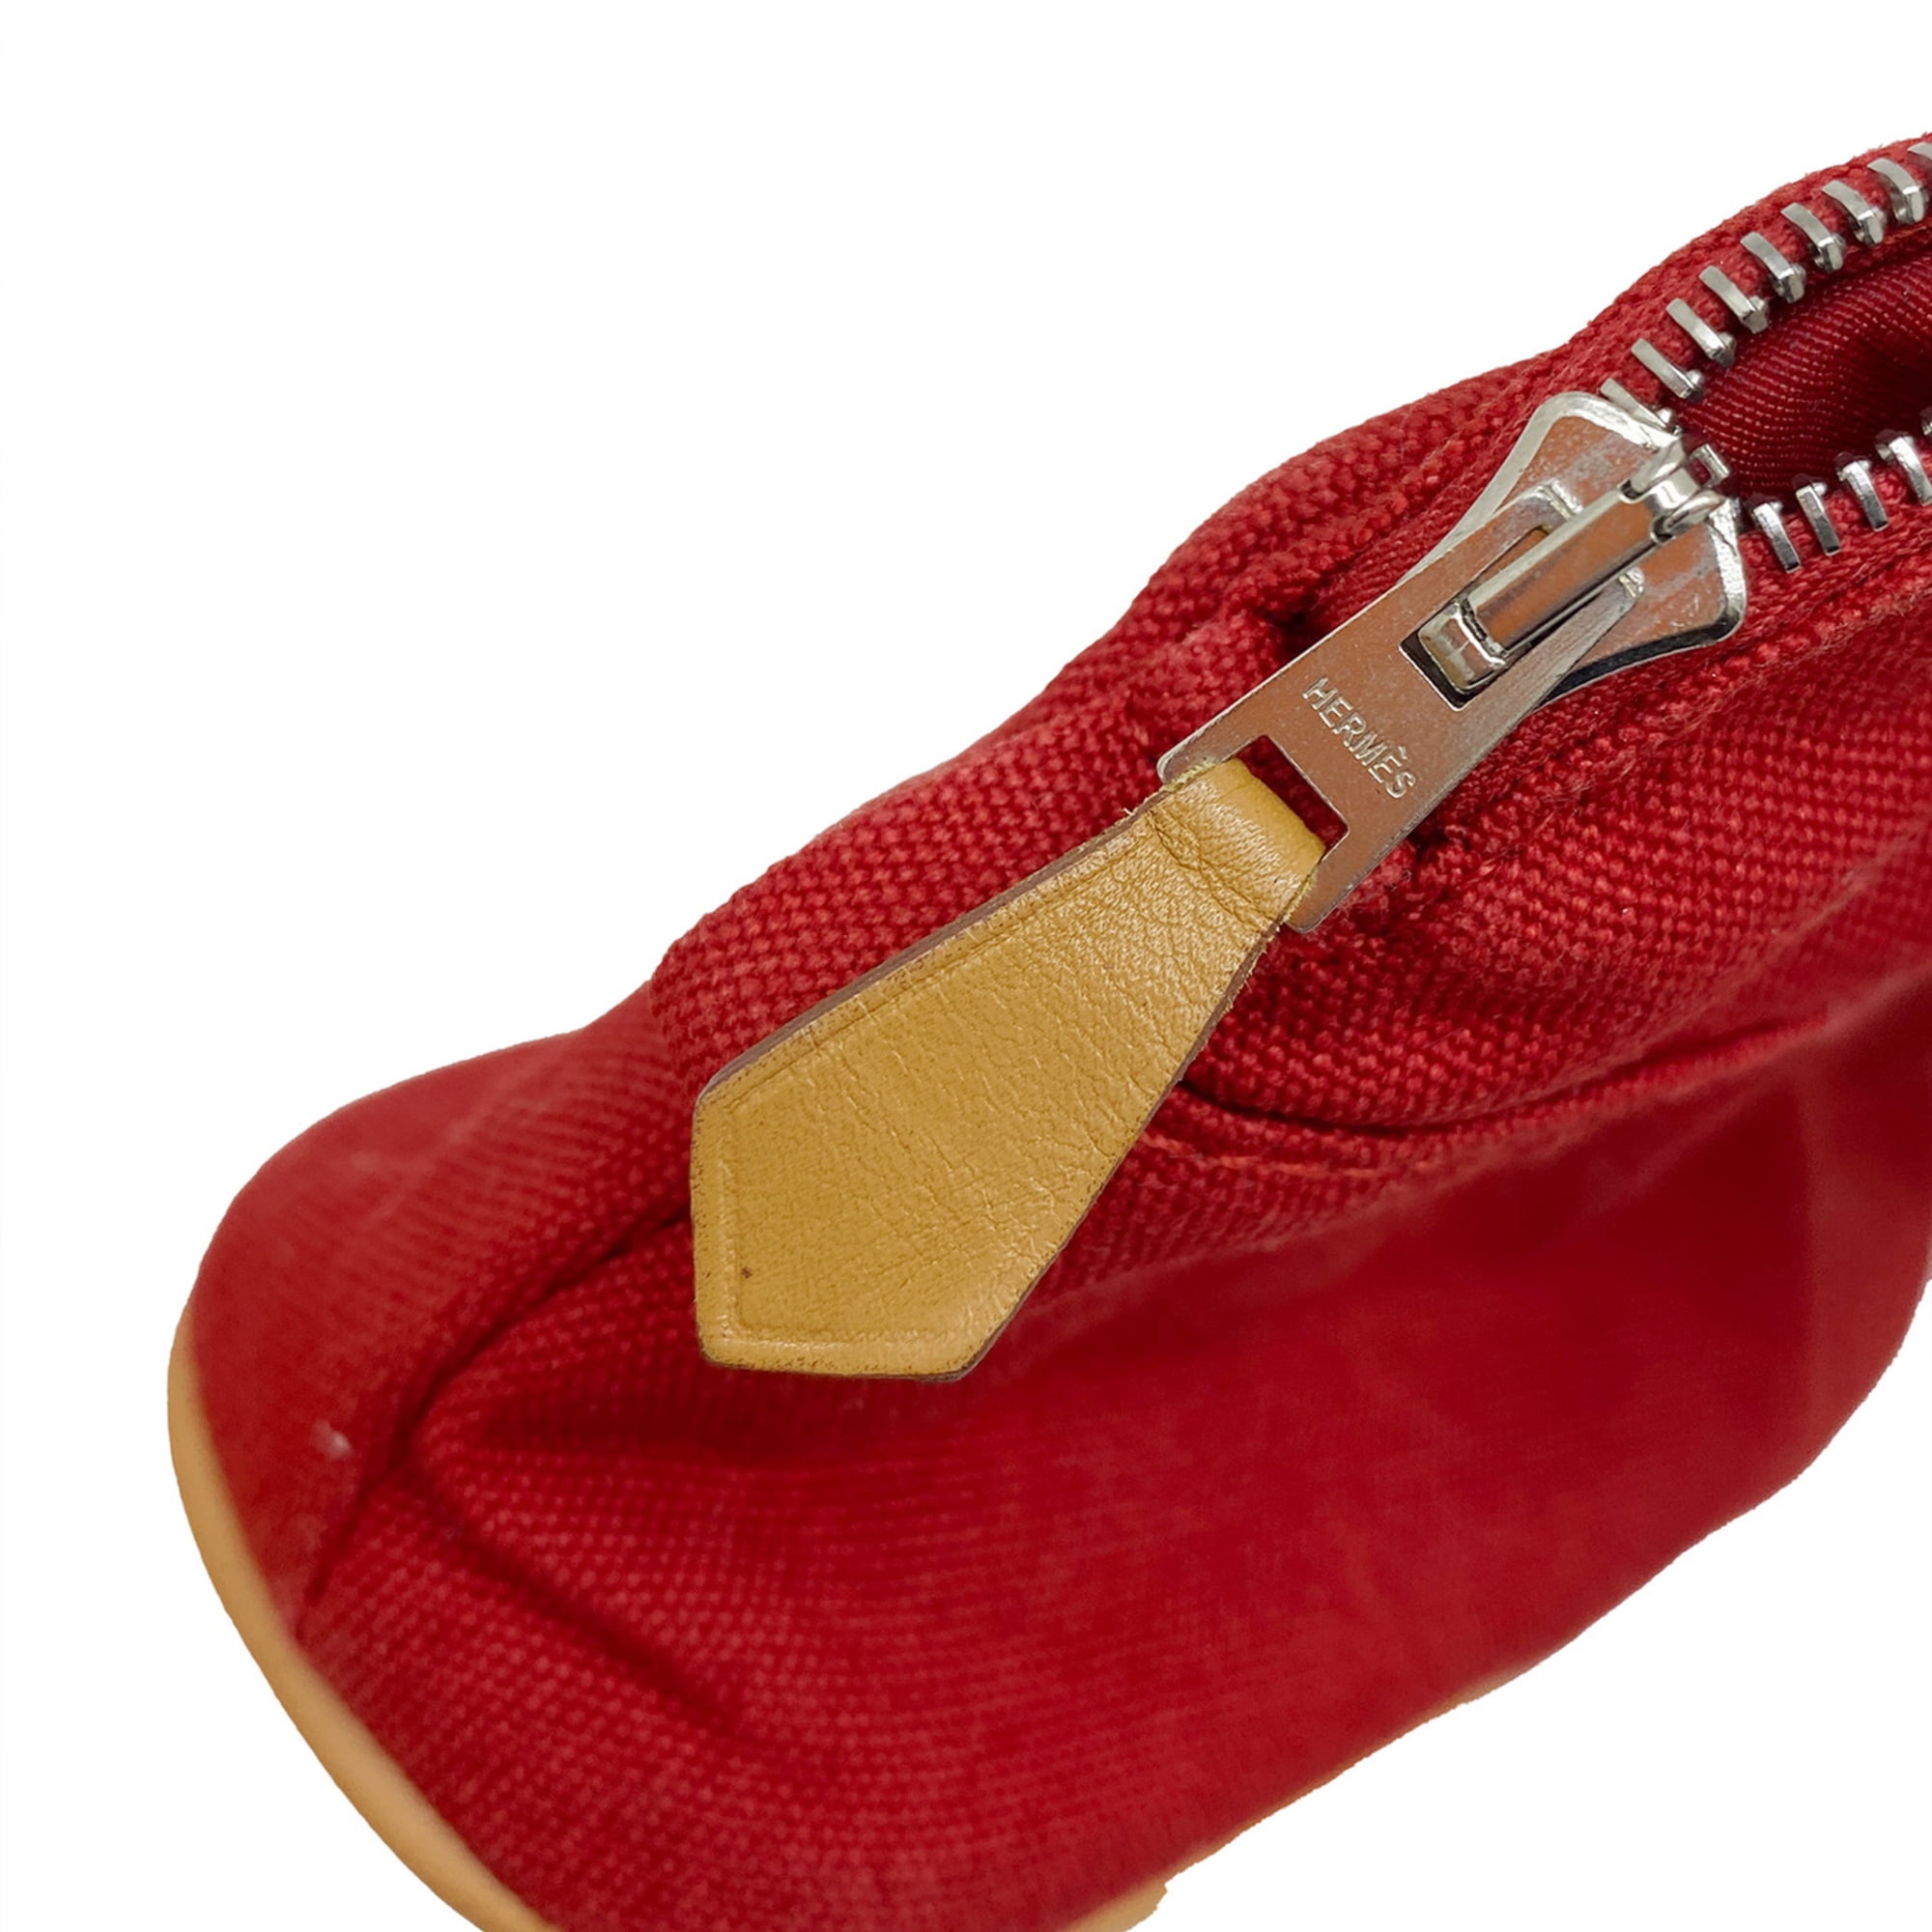 Hermès Vintage - Togo Bolide 35 - Red - Leather Handbag - Avvenice